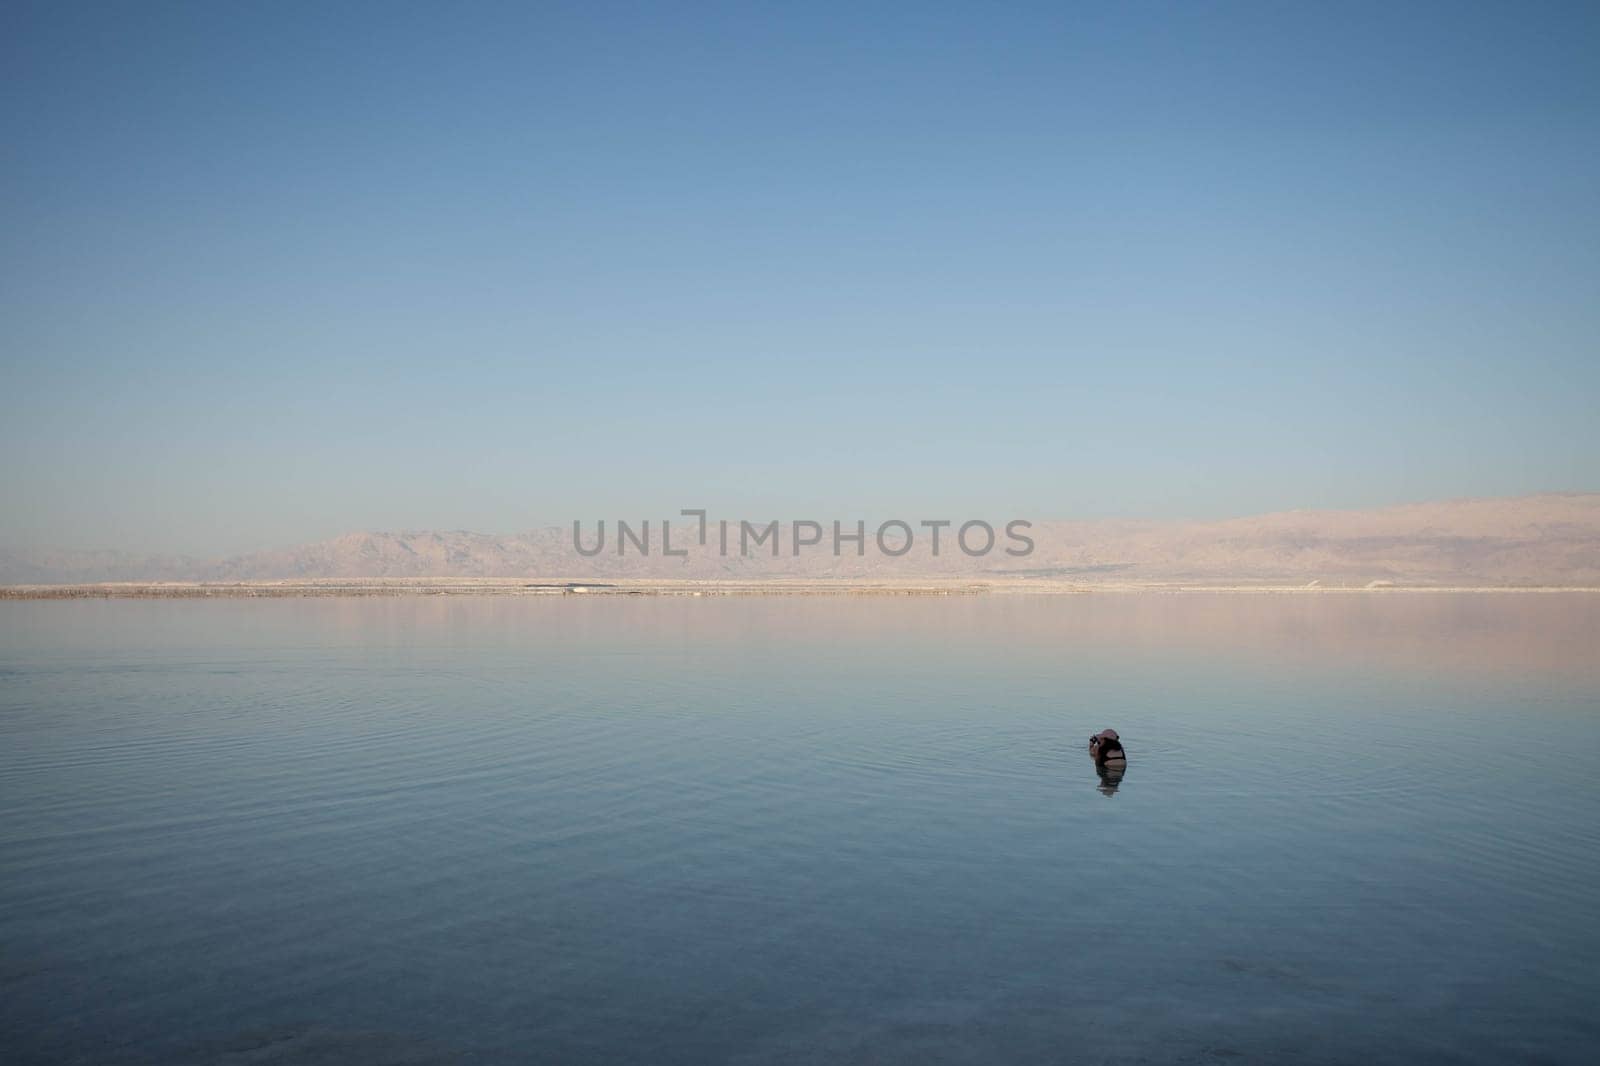 Evening landscape of the Dead Sea shore by gordiza